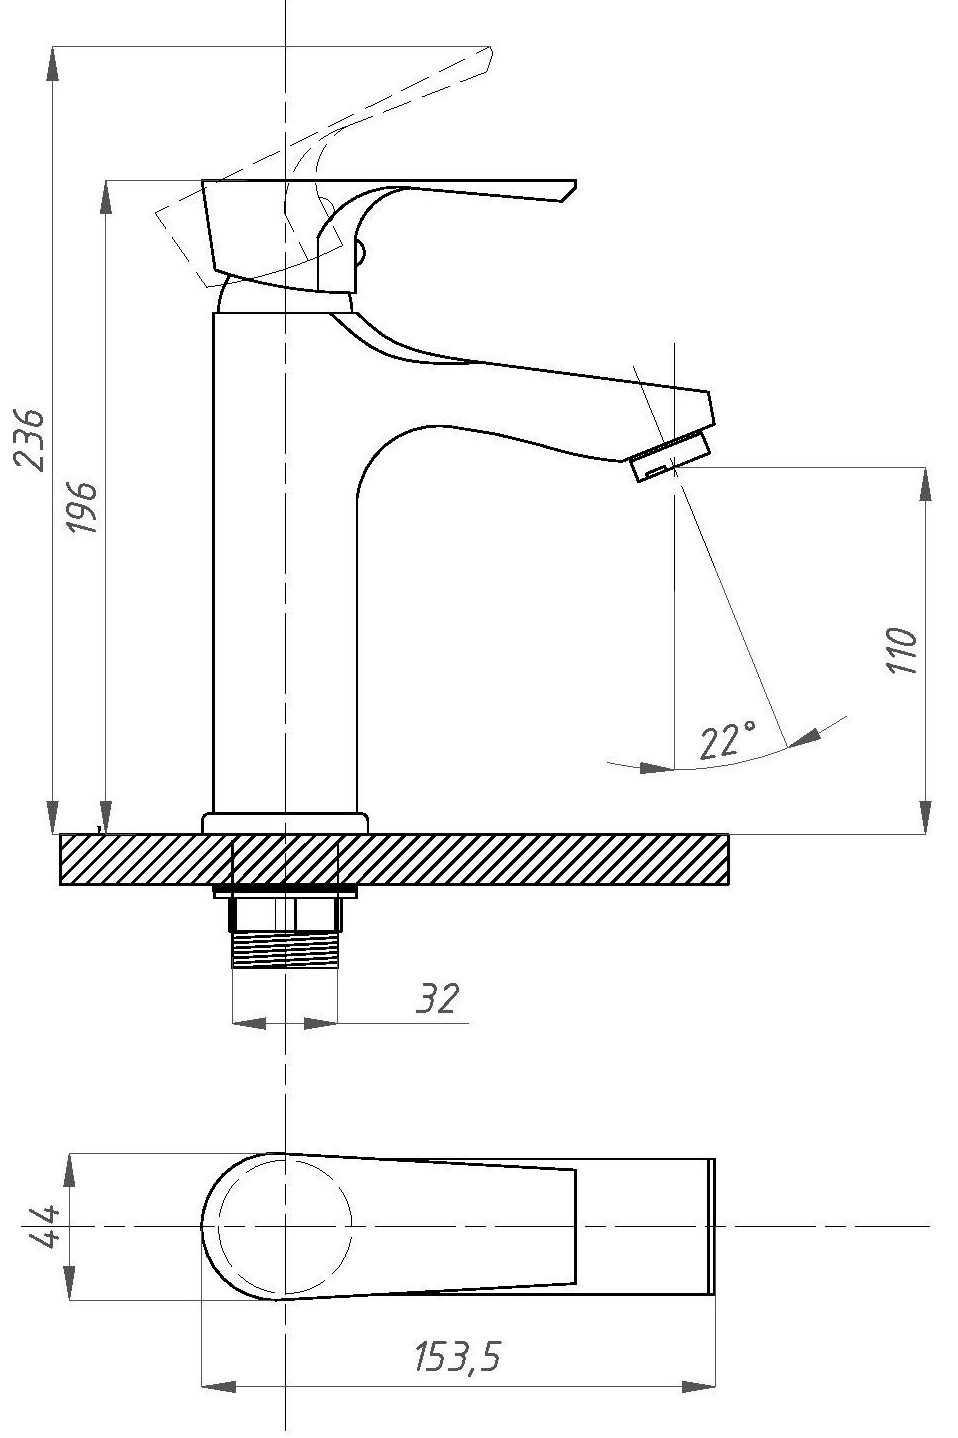 Смеситель для раковины Профсан Элит ПСМ-100 длина 153.5 мм, однорукояточный, излив прямой, серебристый